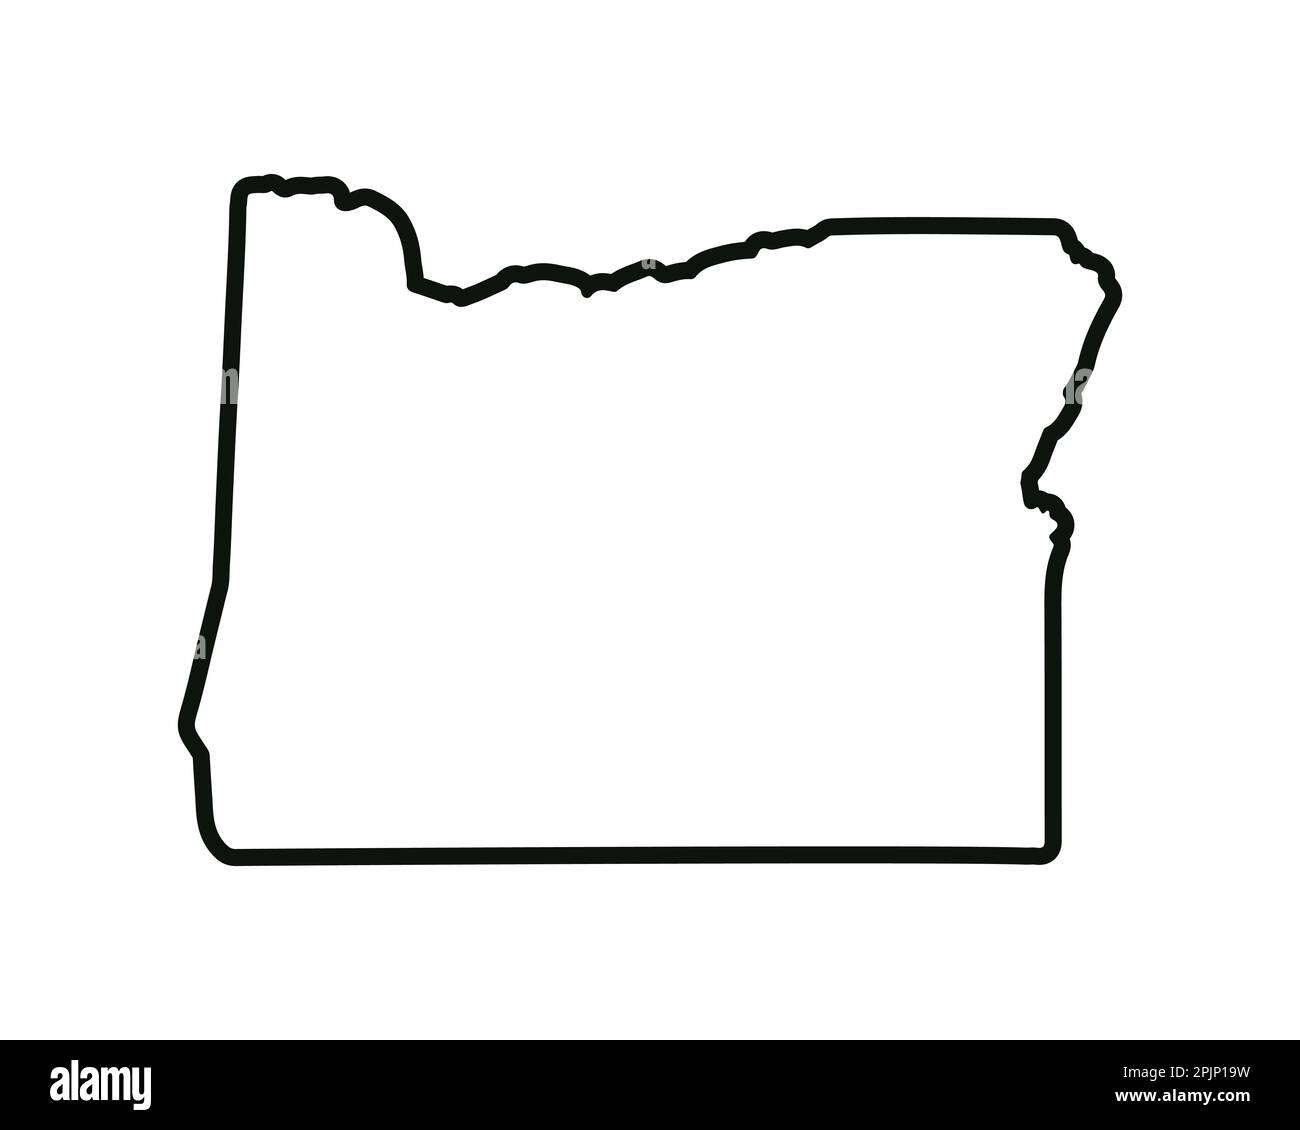 Oregon state map us state map oregon outline symbol vector illustration stock vector image art